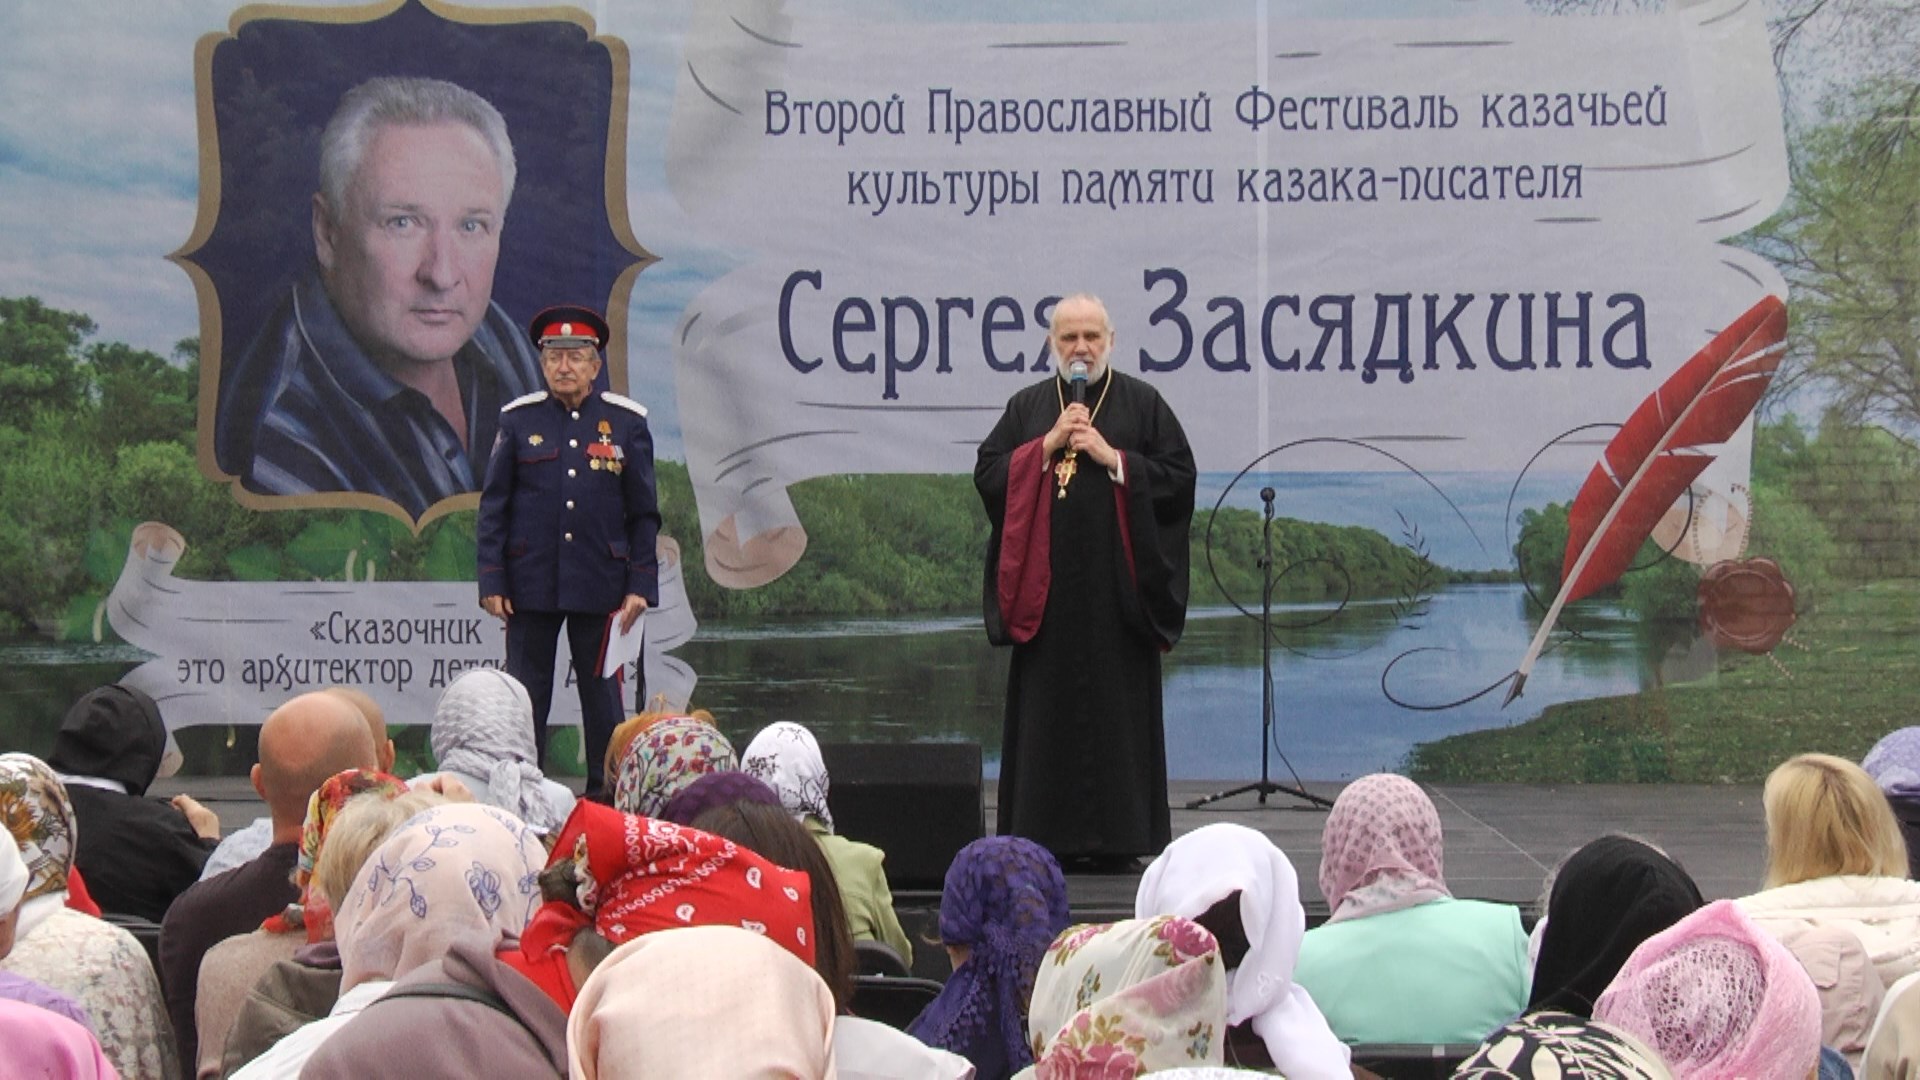 В Волгоградской области пройдет фестиваль памяти казака-писателя Сергея Засядкина